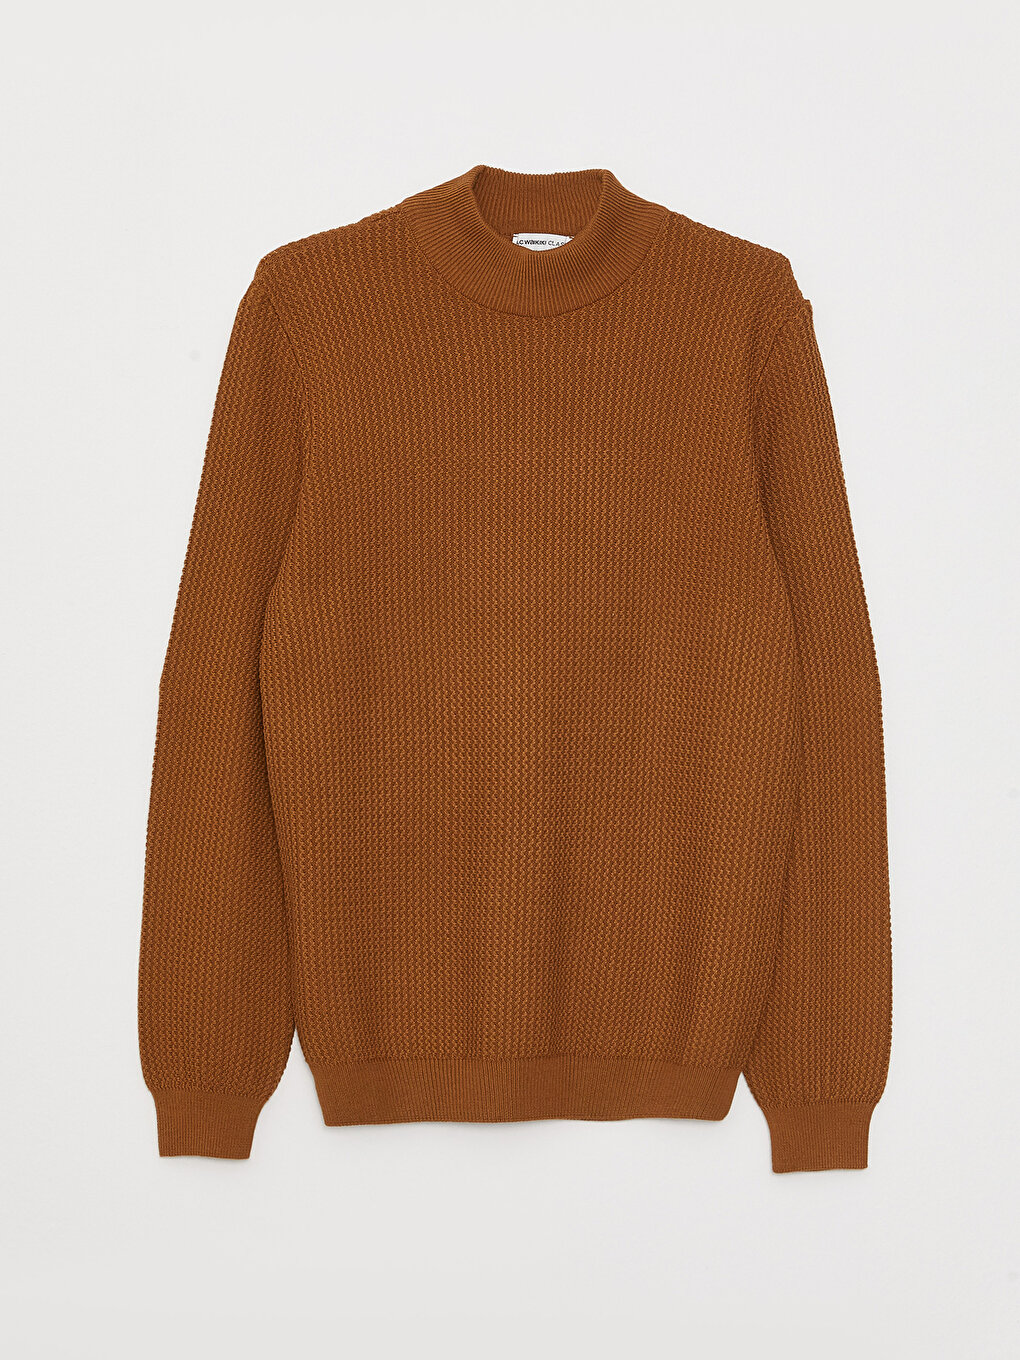 Half Turtleneck Long Sleeve Men's Tricot Sweater -W2CG07Z8-SMT ...